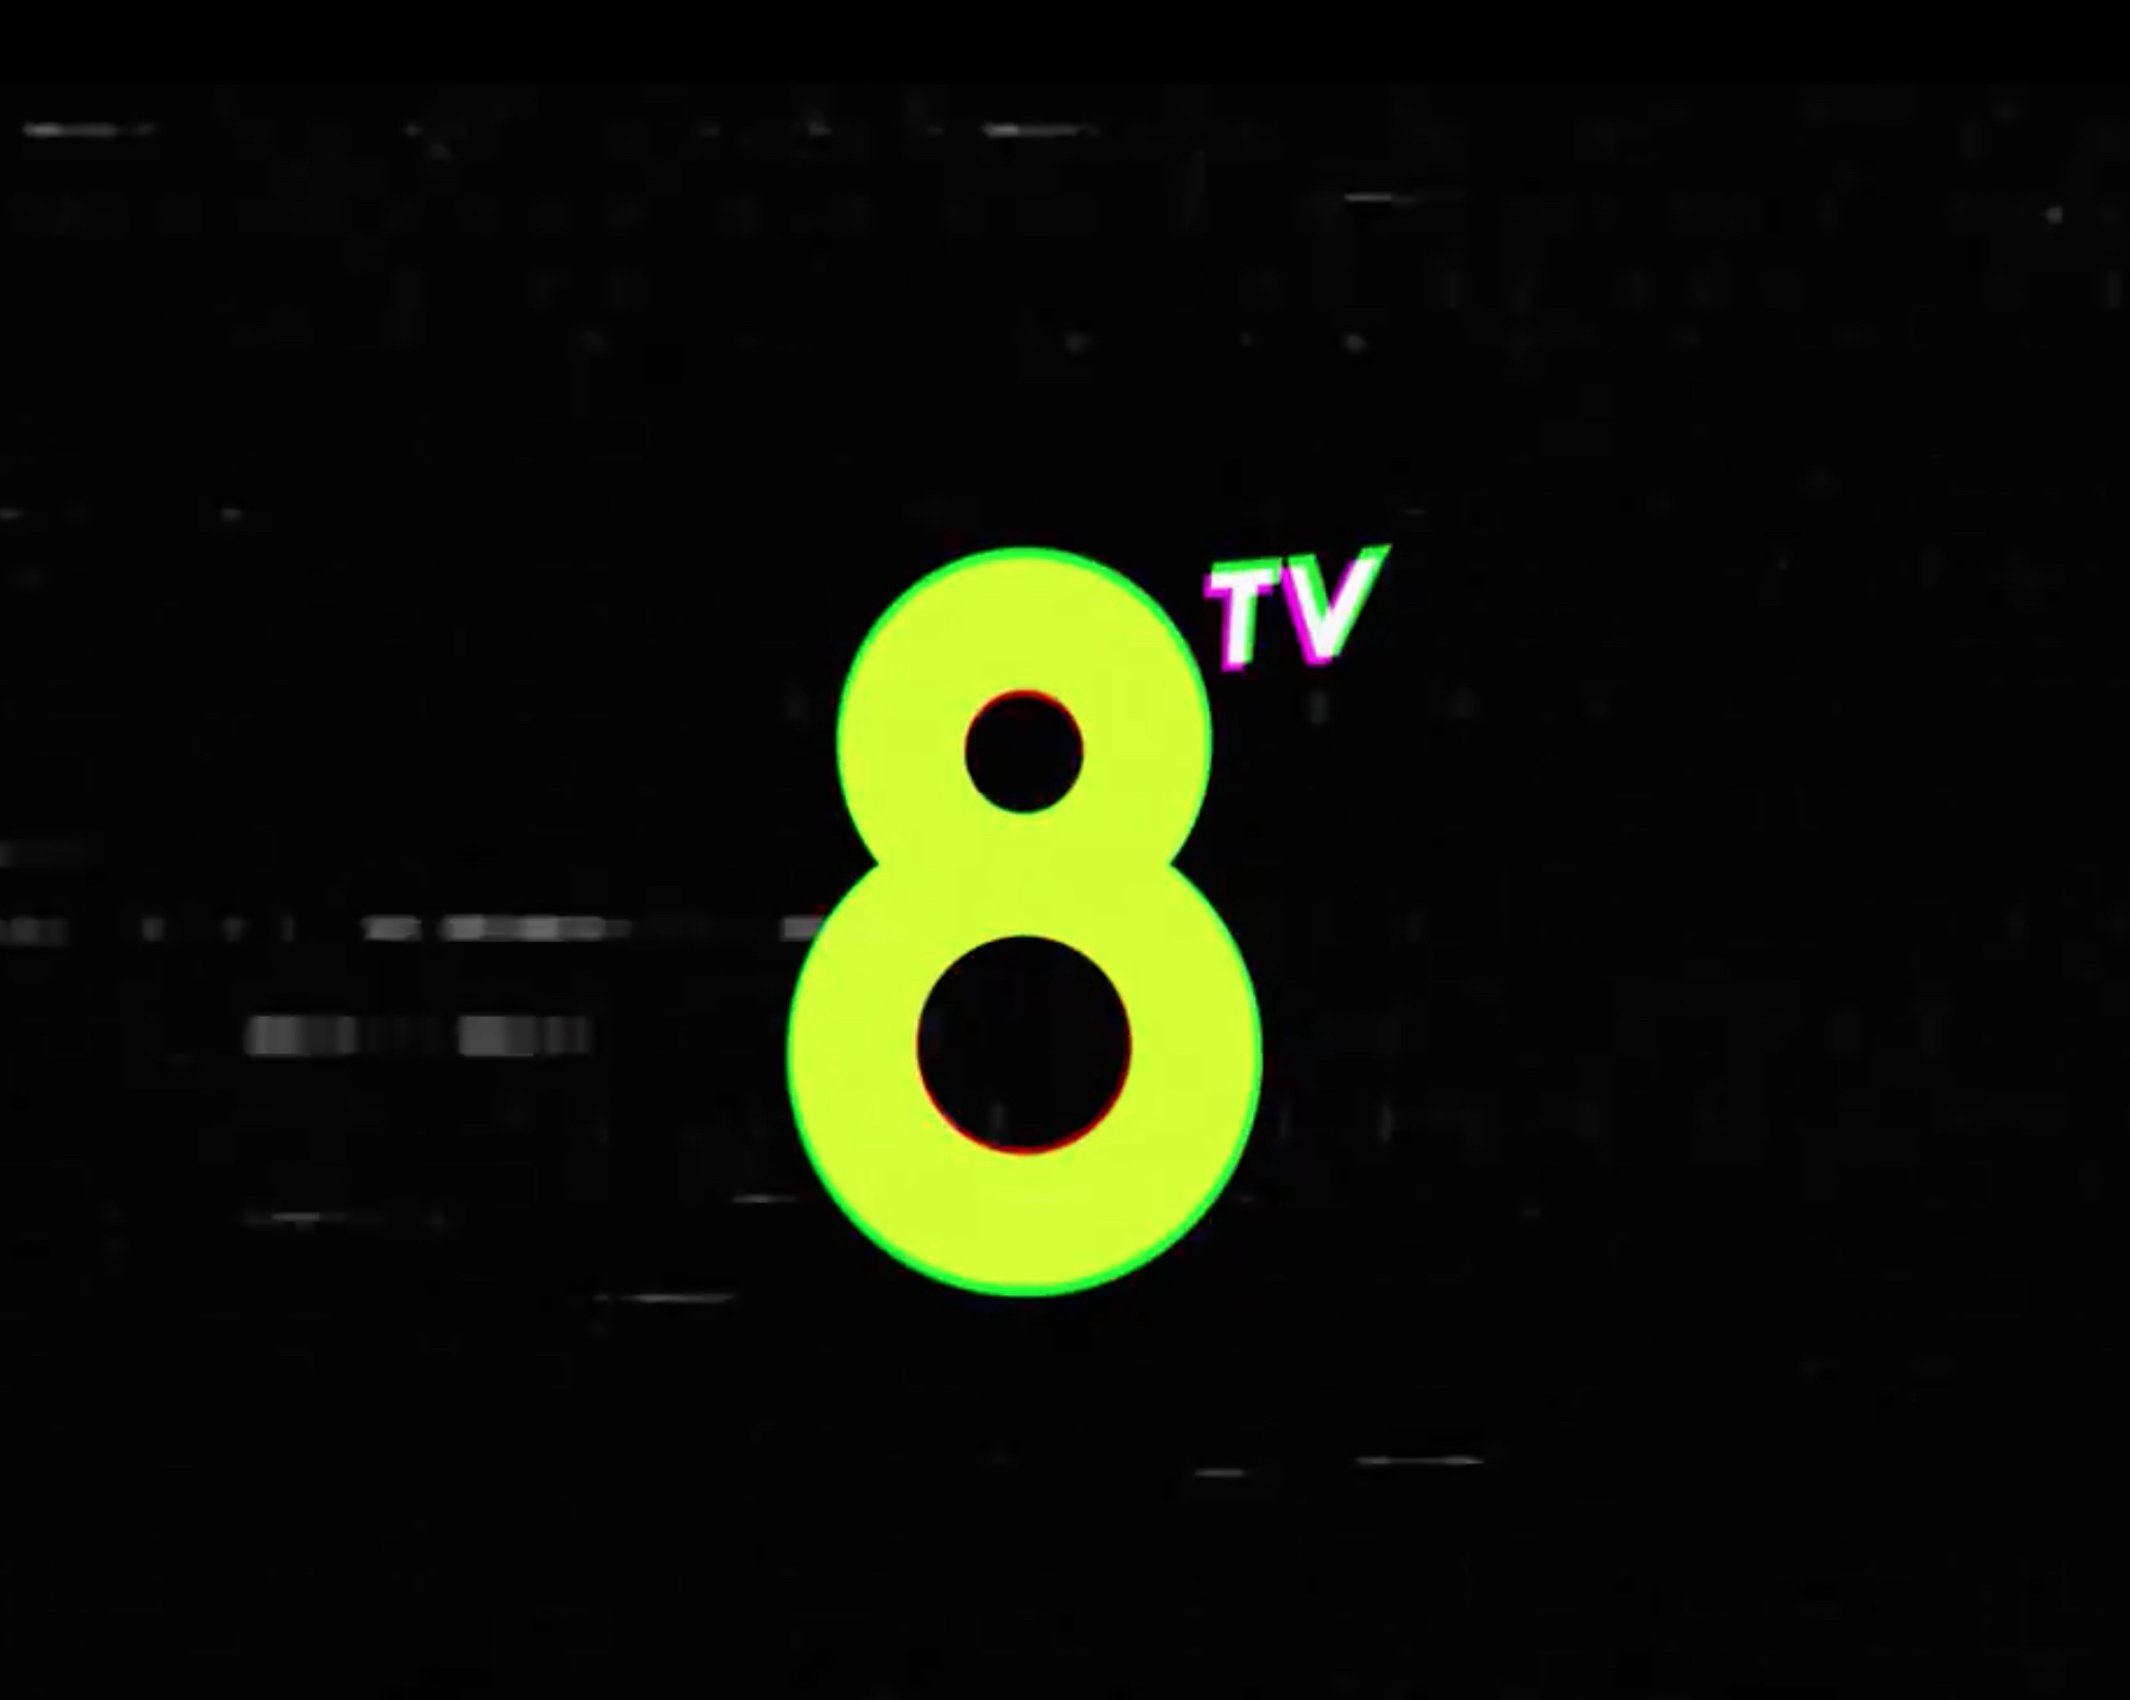 La nova 8tv s'estrena a xarxes amb un missatge clar desafiant TV3